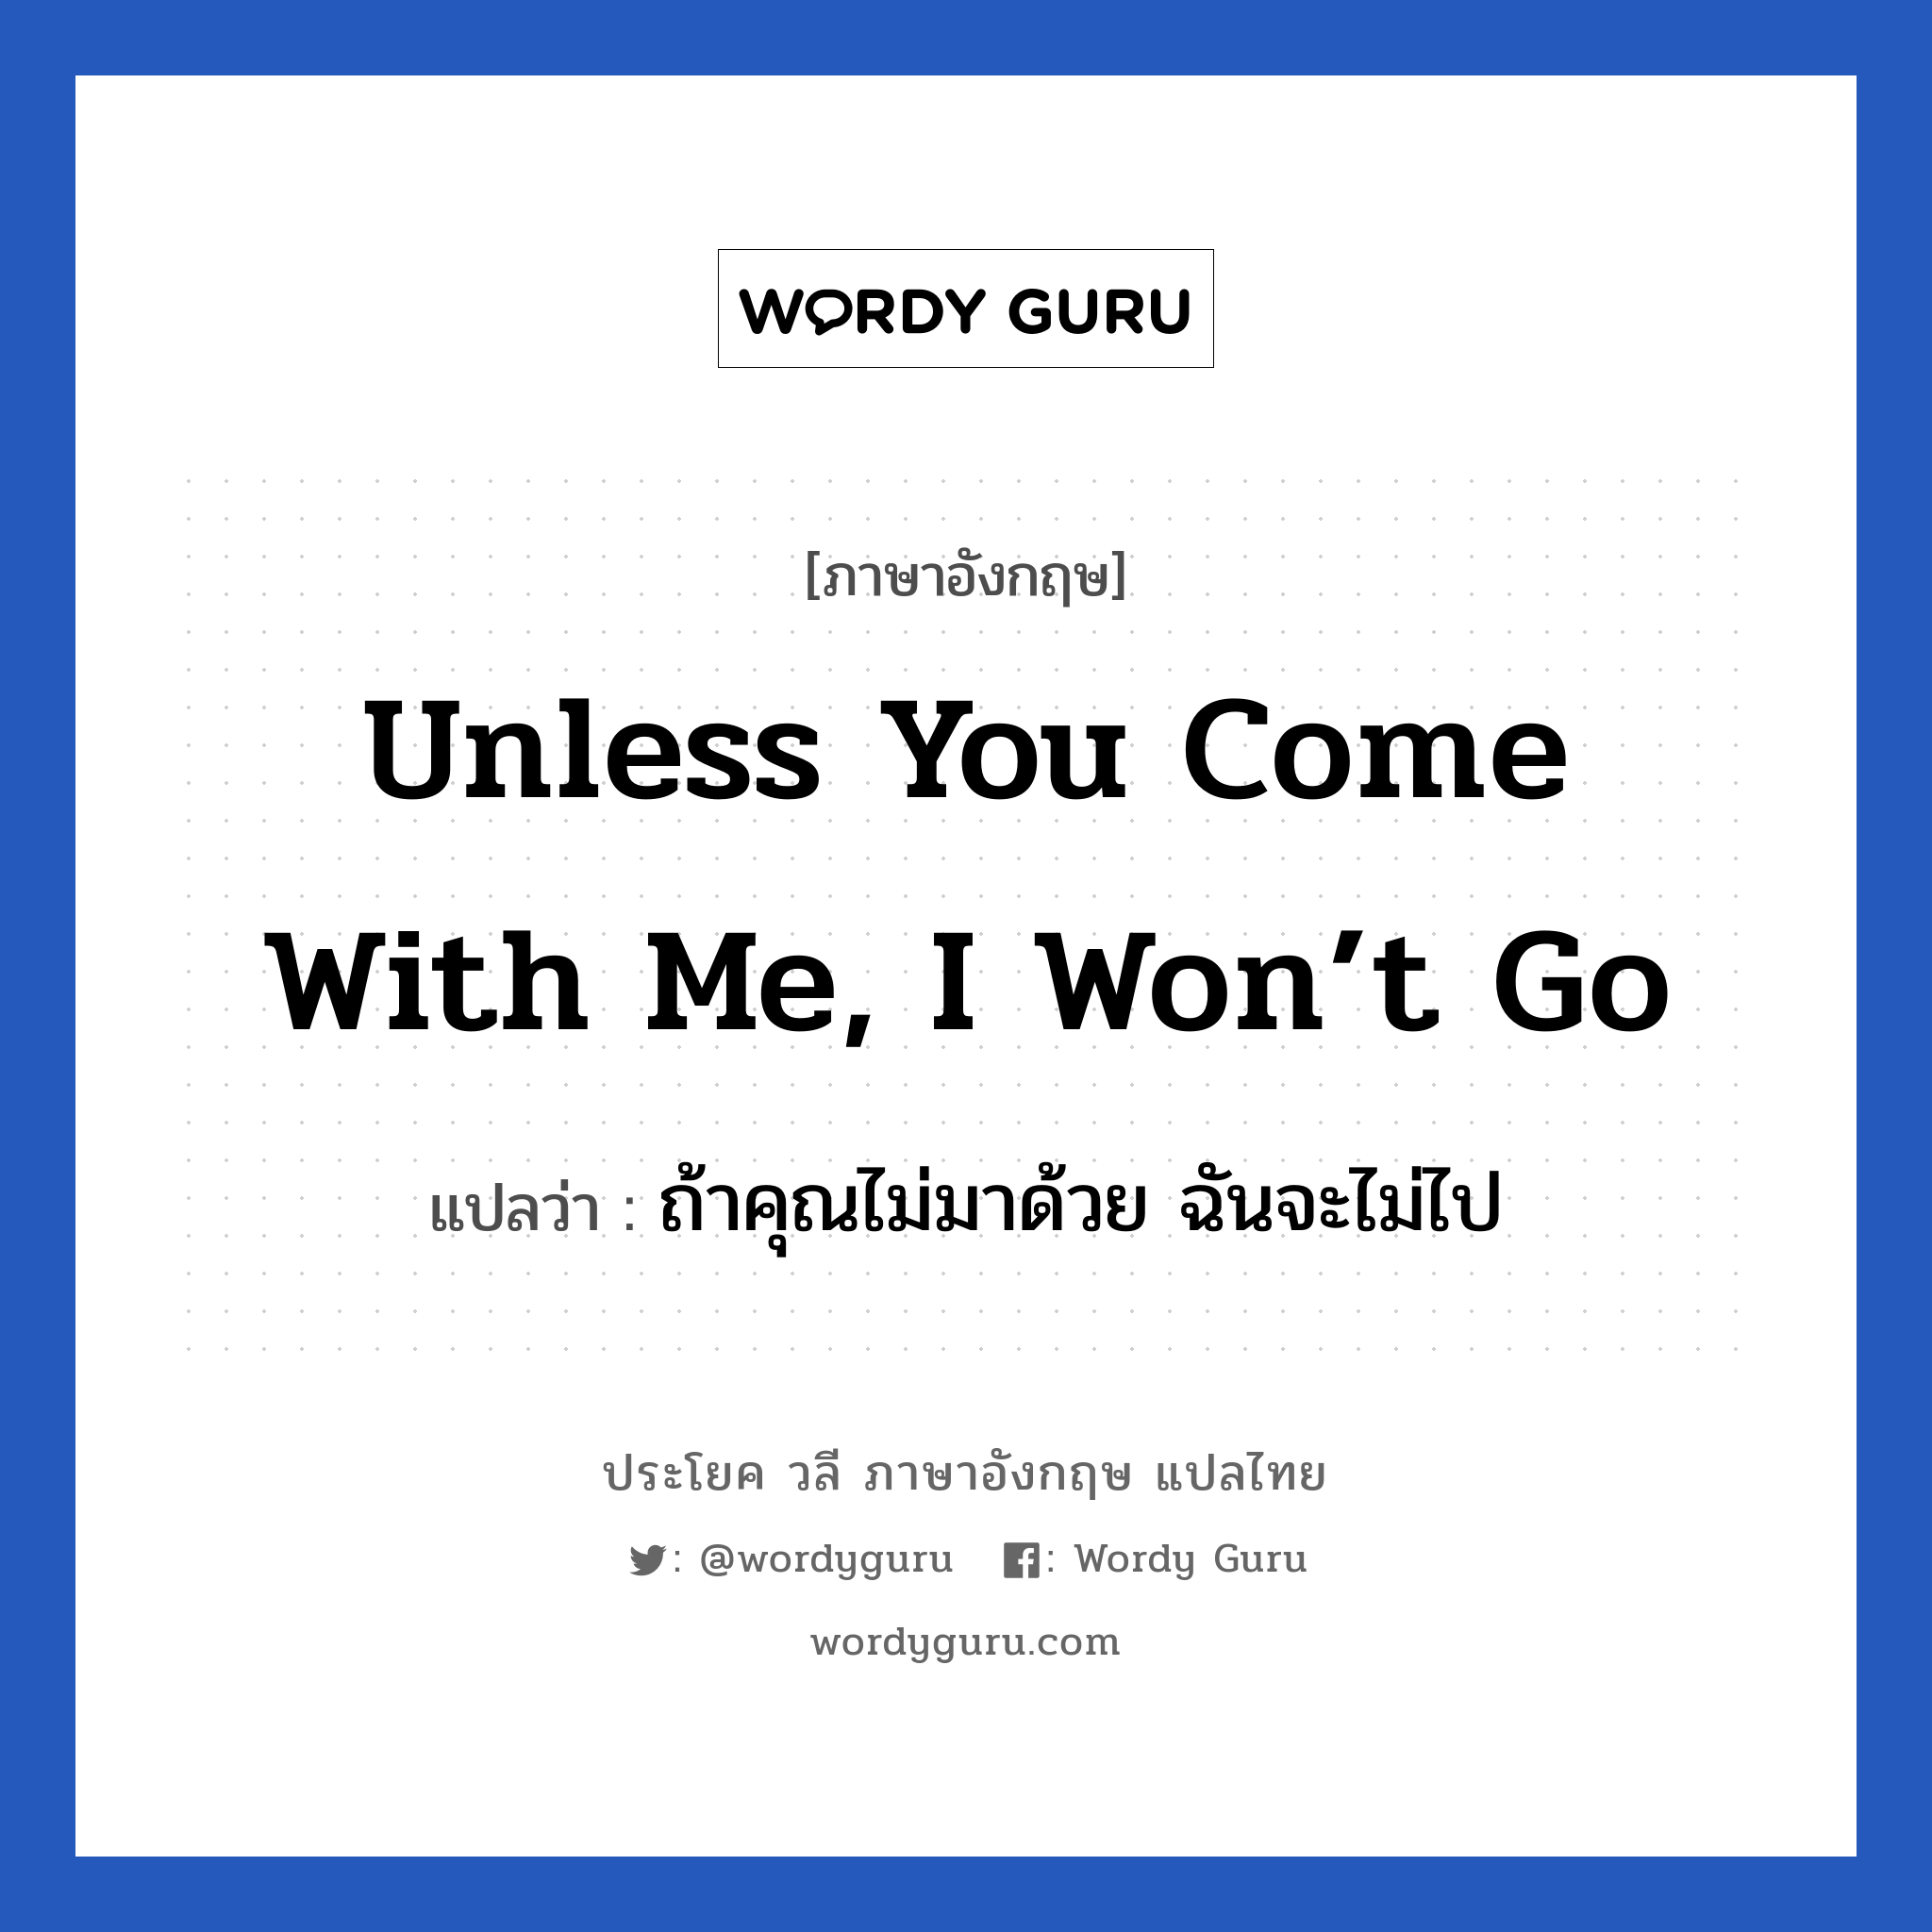 Unless you come with me, I won’t go แปลว่า?, วลีภาษาอังกฤษ Unless you come with me, I won’t go แปลว่า ถ้าคุณไม่มาด้วย ฉันจะไม่ไป